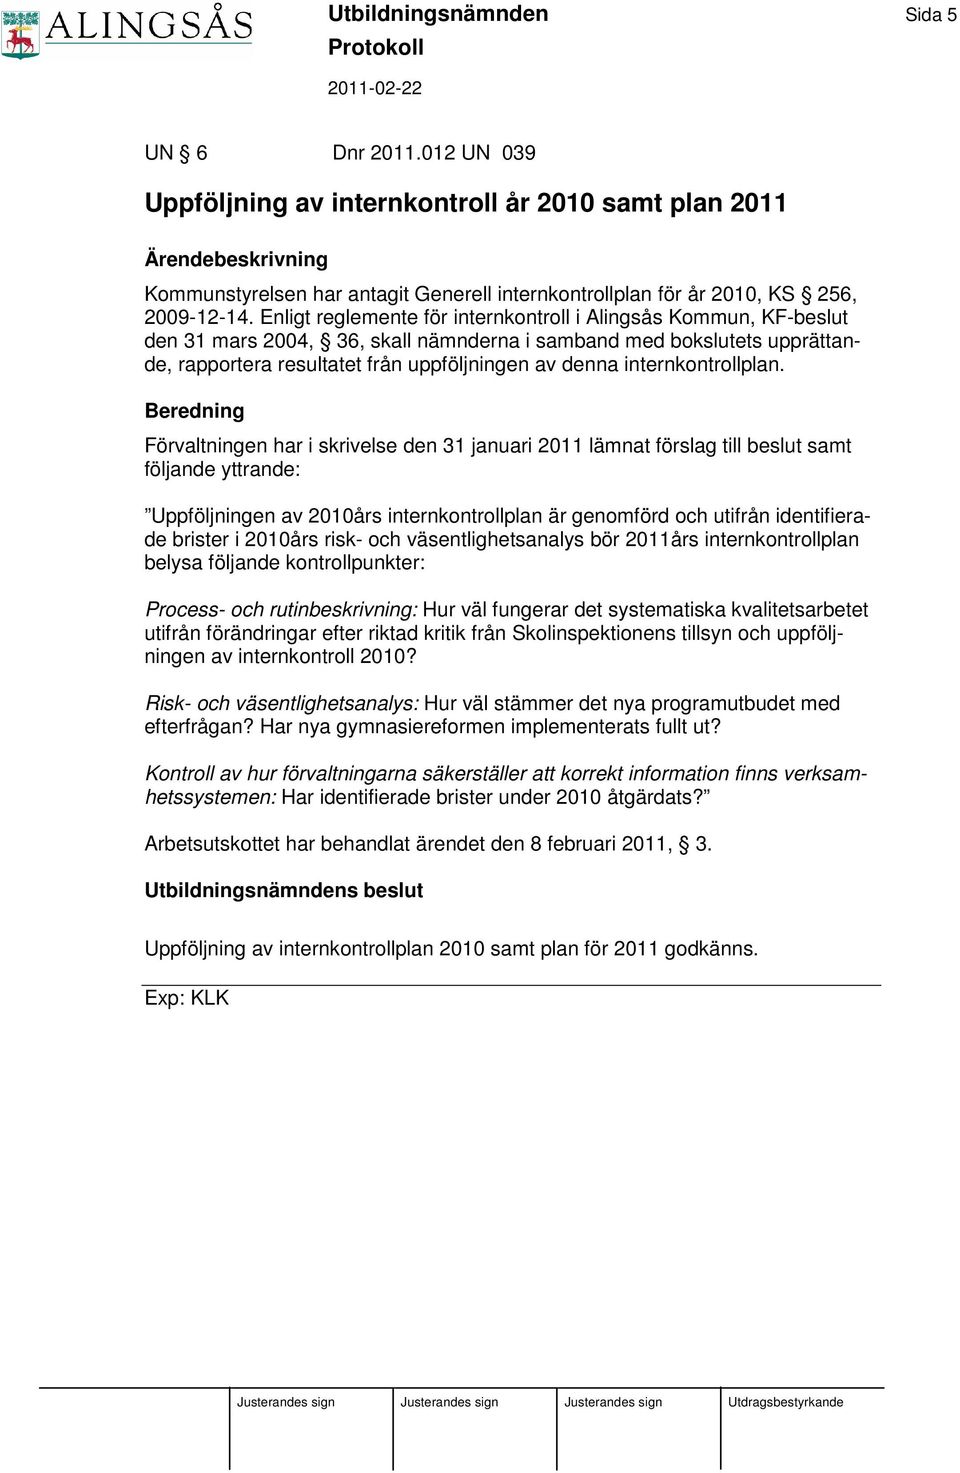 Enligt reglemente för internkontroll i Alingsås Kommun, KF-beslut den 31 mars 2004, 36, skall nämnderna i samband med bokslutets upprättande, rapportera resultatet från uppföljningen av denna